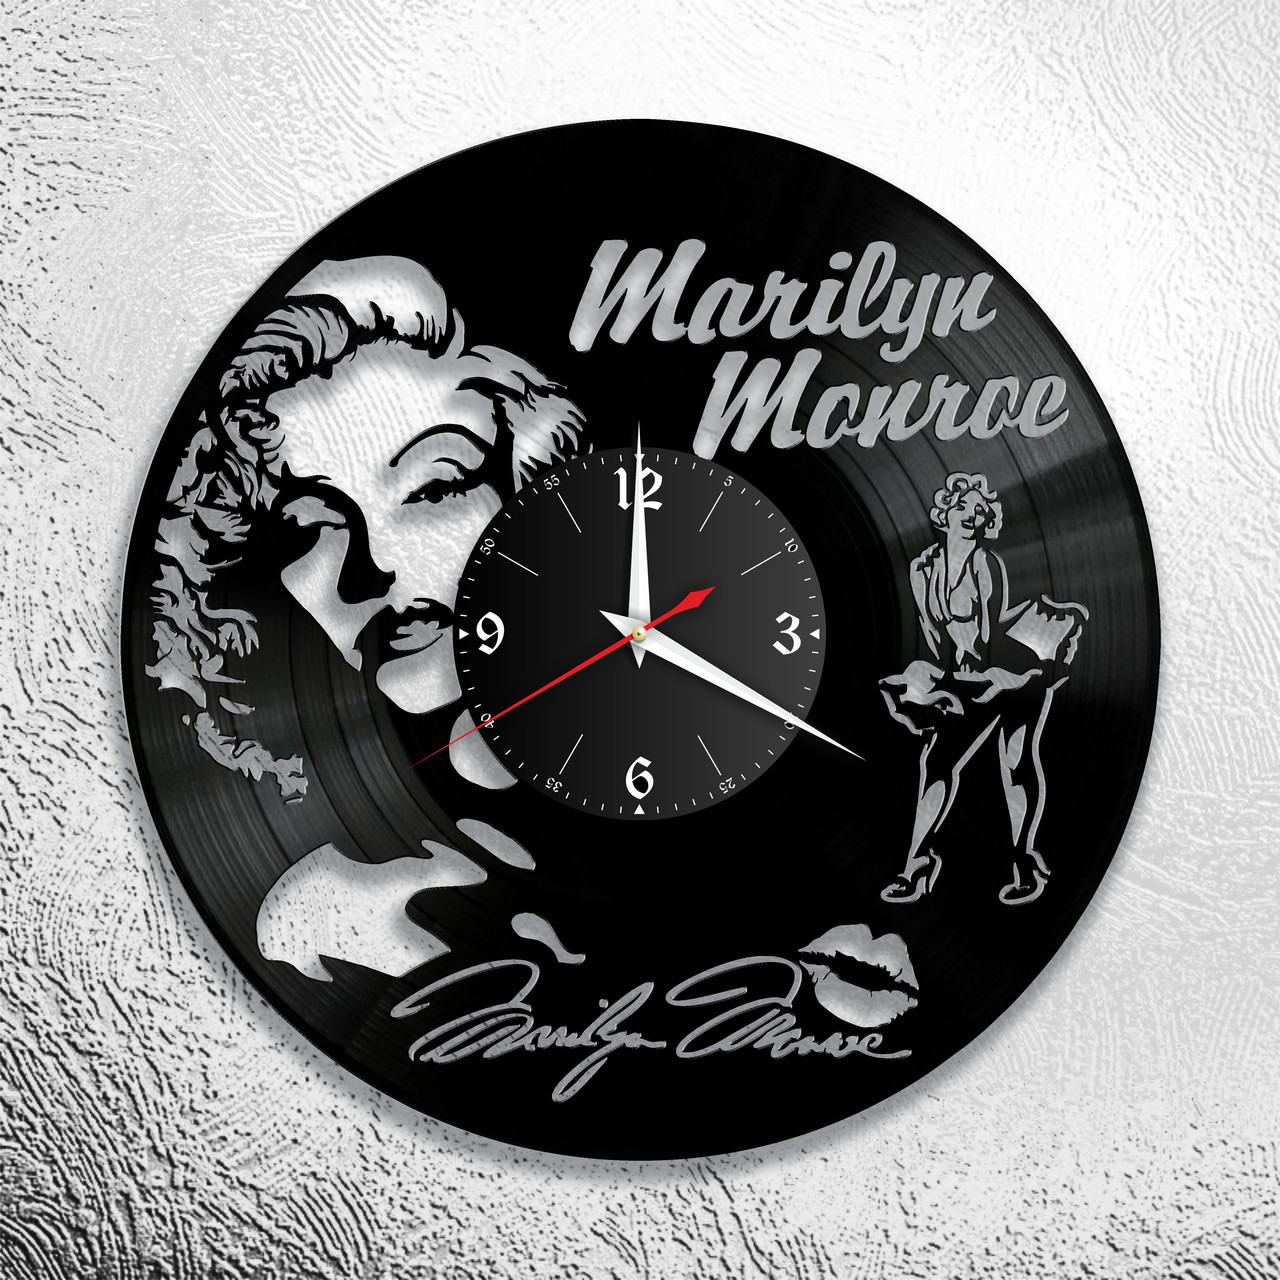 Оригинальные часы из виниловых пластинок Мэрилин Монро"" версия 1, фото 1